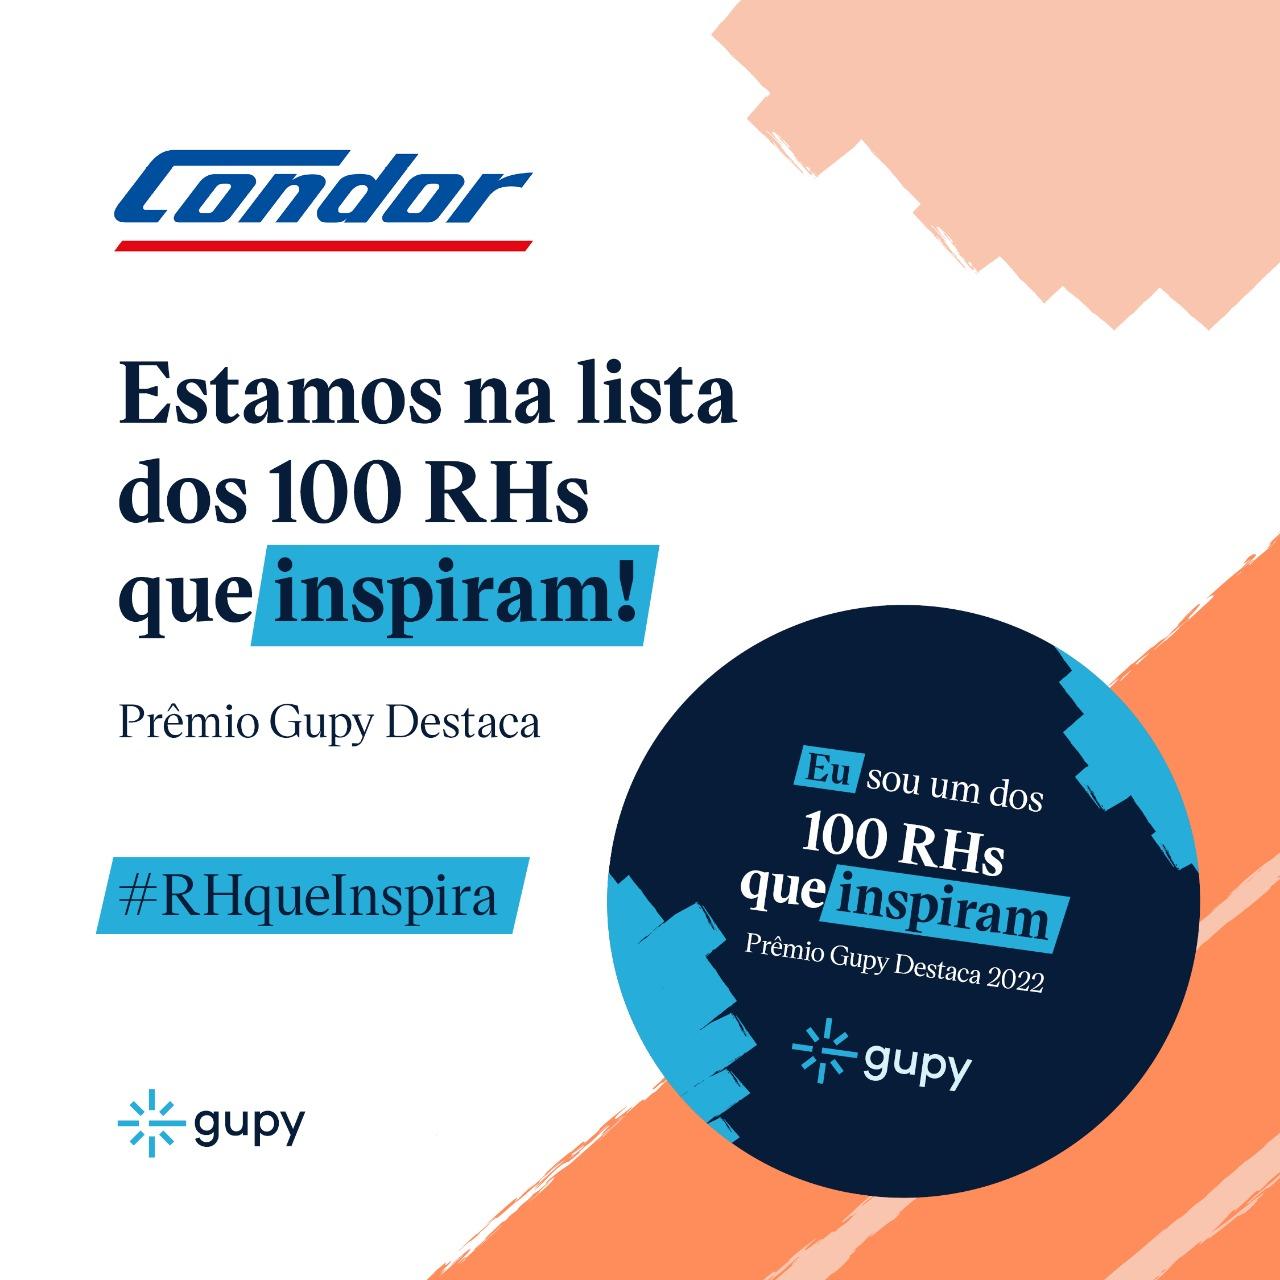 Condor está entre os 100 RH’s que mais inspiram no Brasil